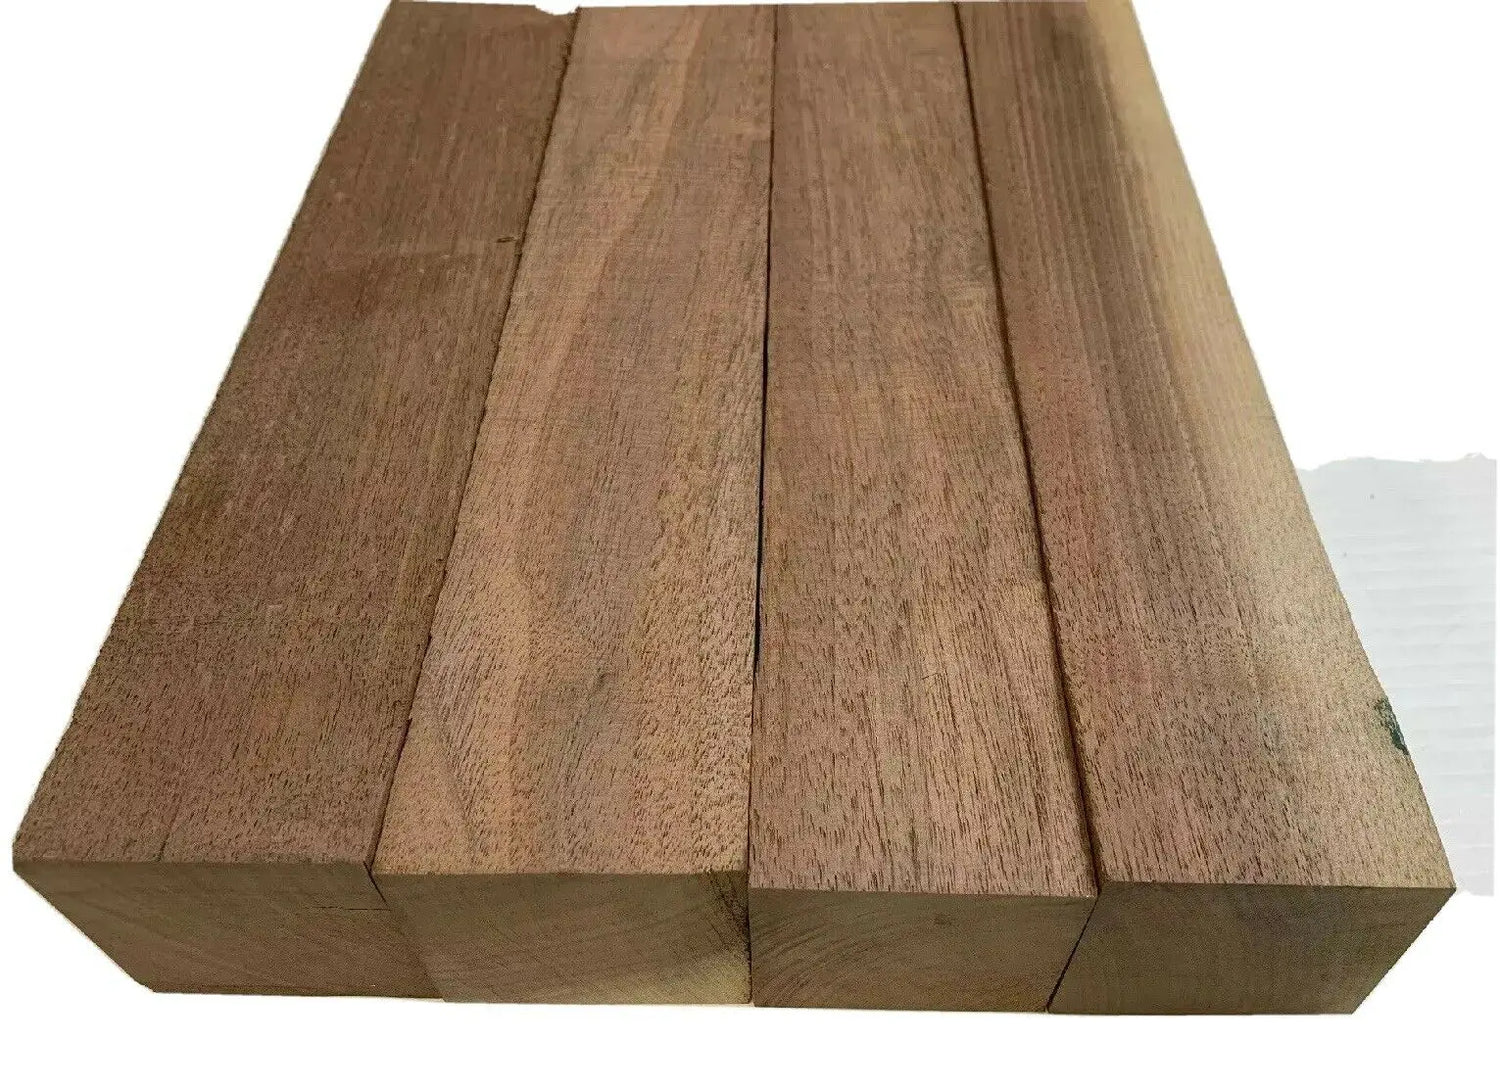 Walnut Exotic Wood & Walnut Lumber